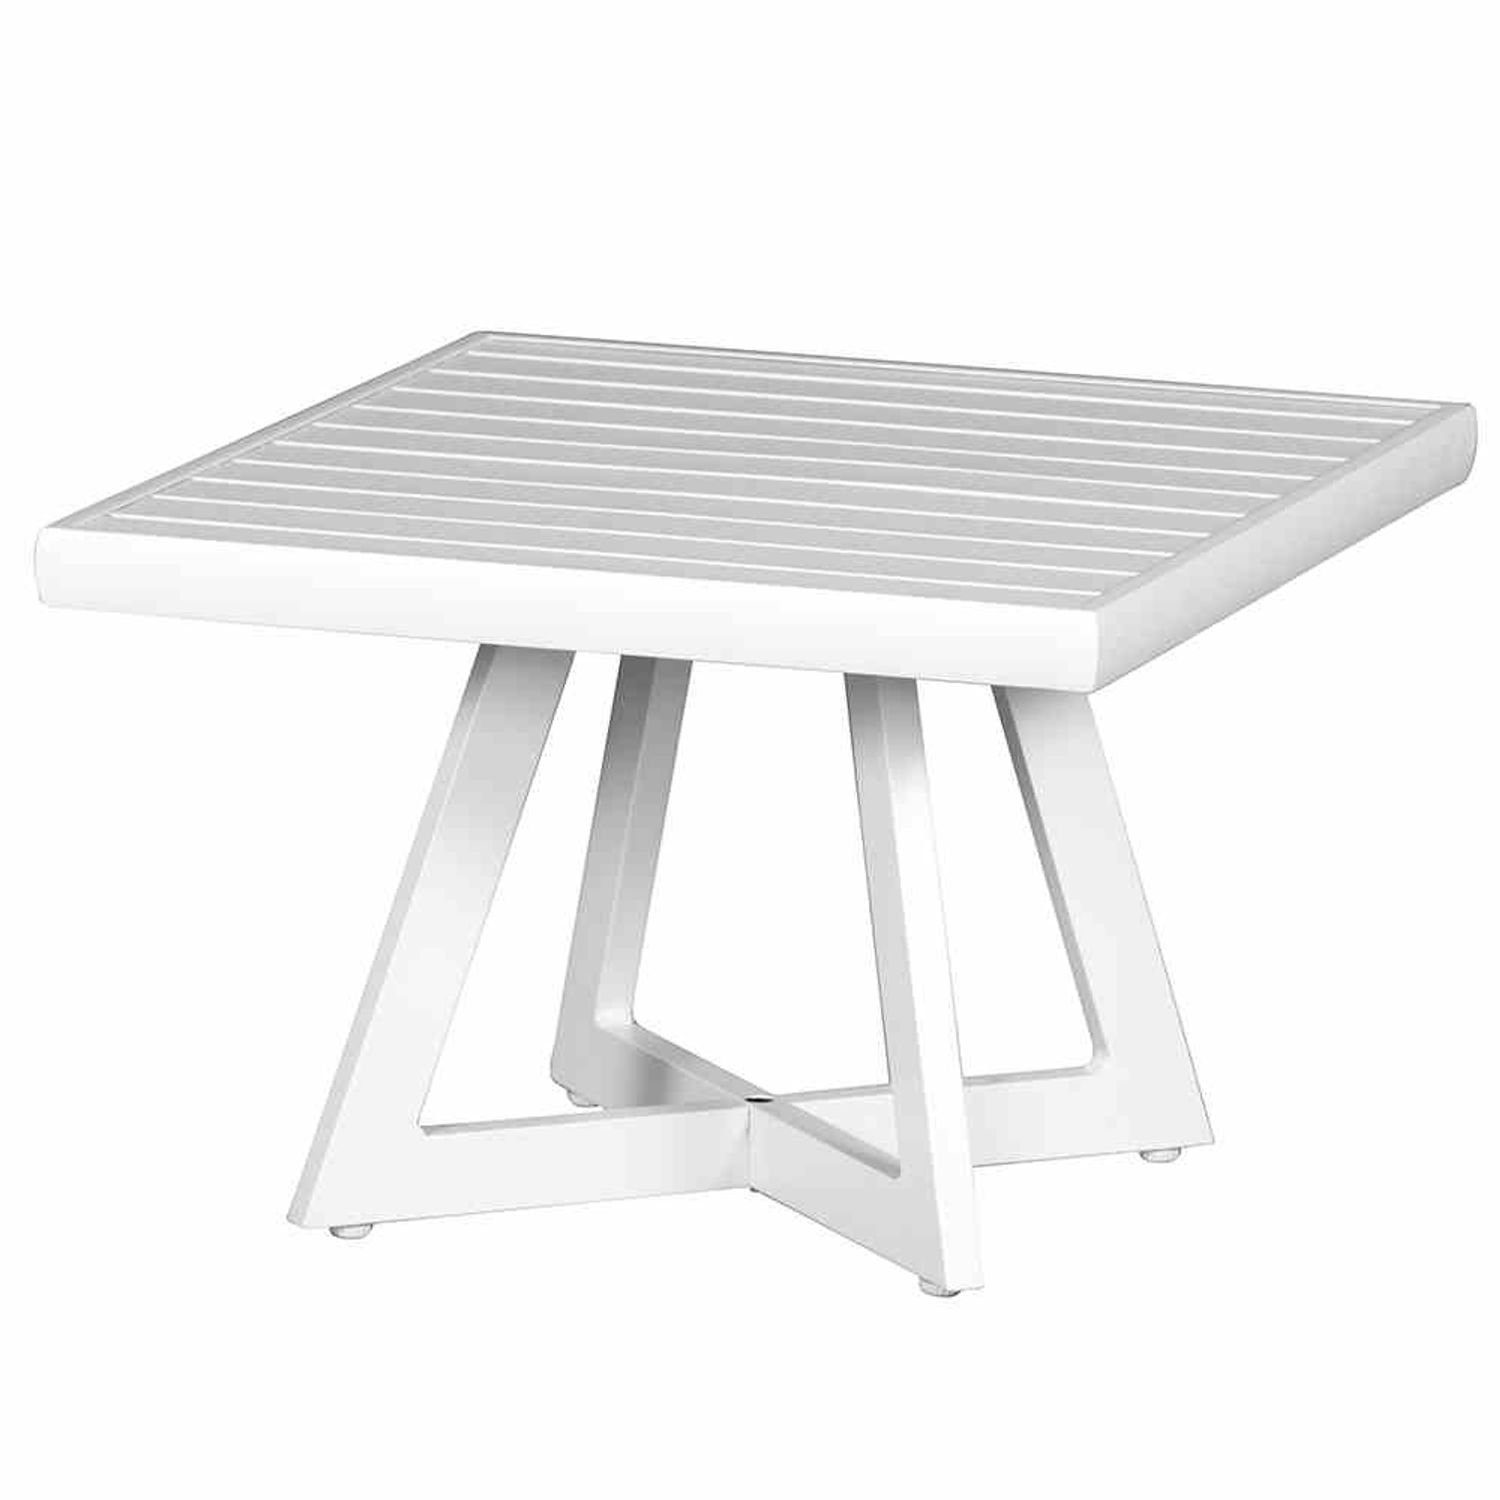 Alexis 50x50 Tisch matt-weiß Gartentisch Lounge Tresentisch Aluminium Gartentisch Siena Garden